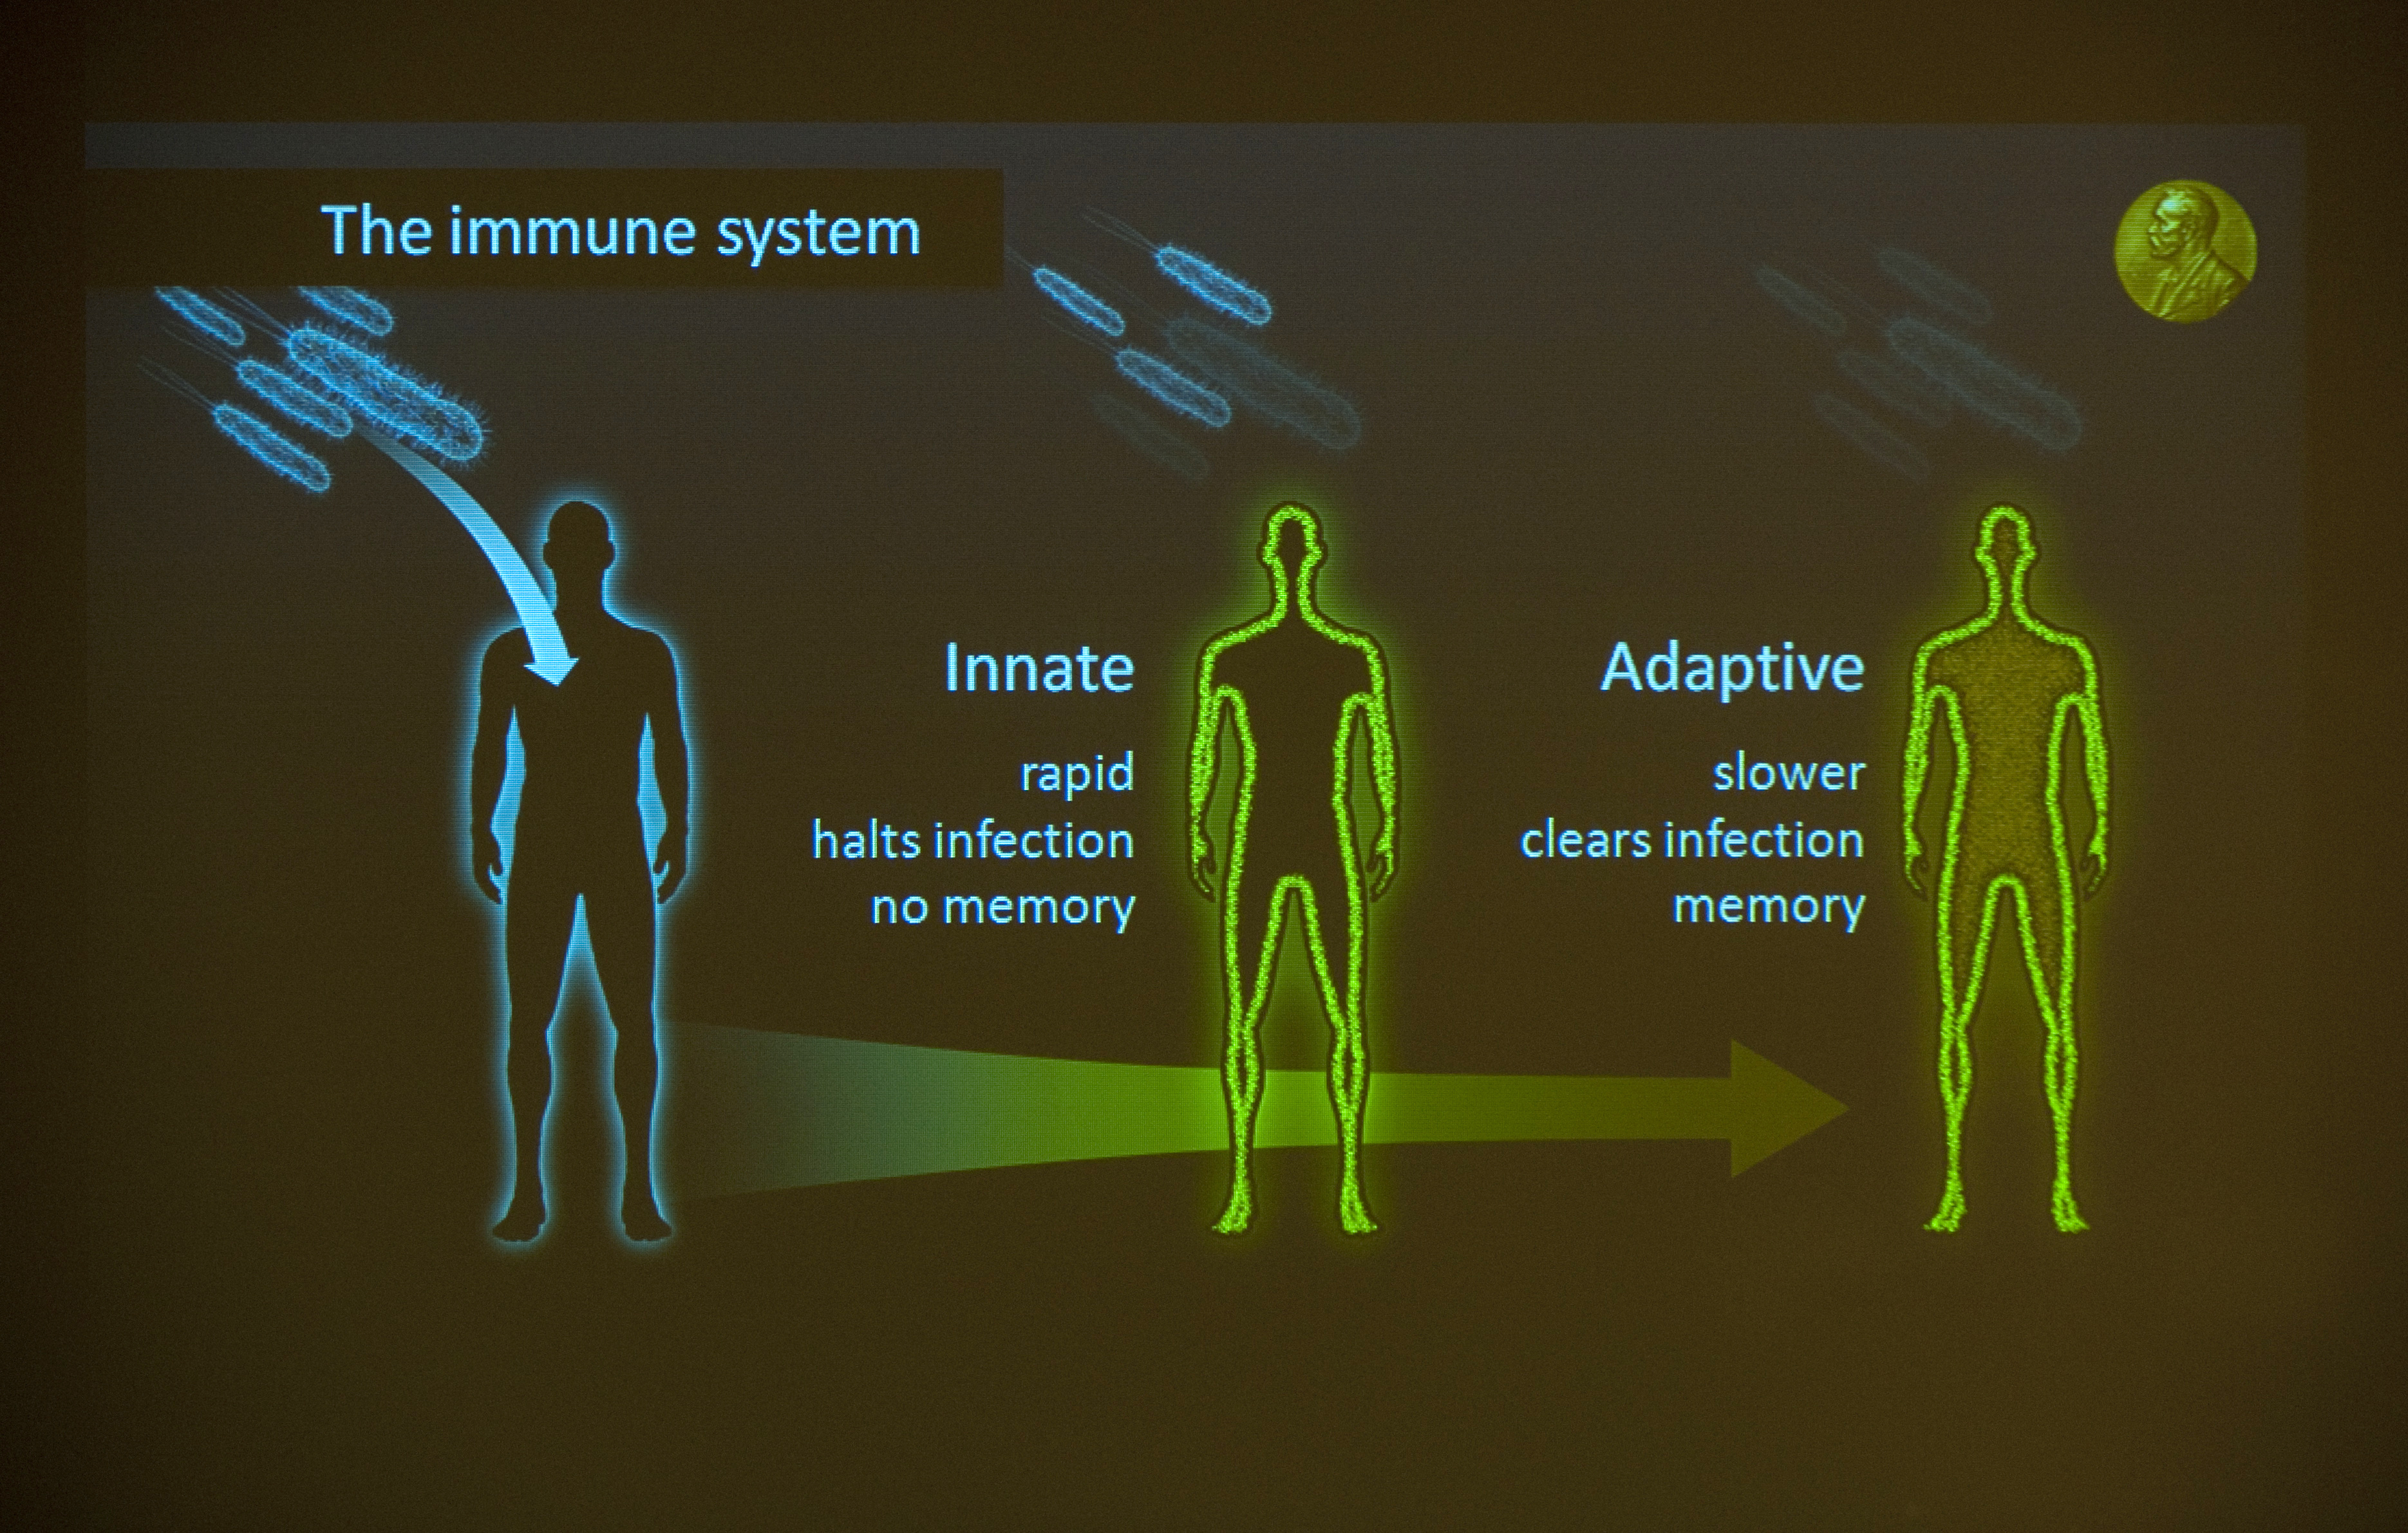 Клетки иммунной системы (макрофаги) имеют способность к распознанию высокого уровня Na в коже. Фото: JONATHAN NACKSTRAND/AFP/Getty Images